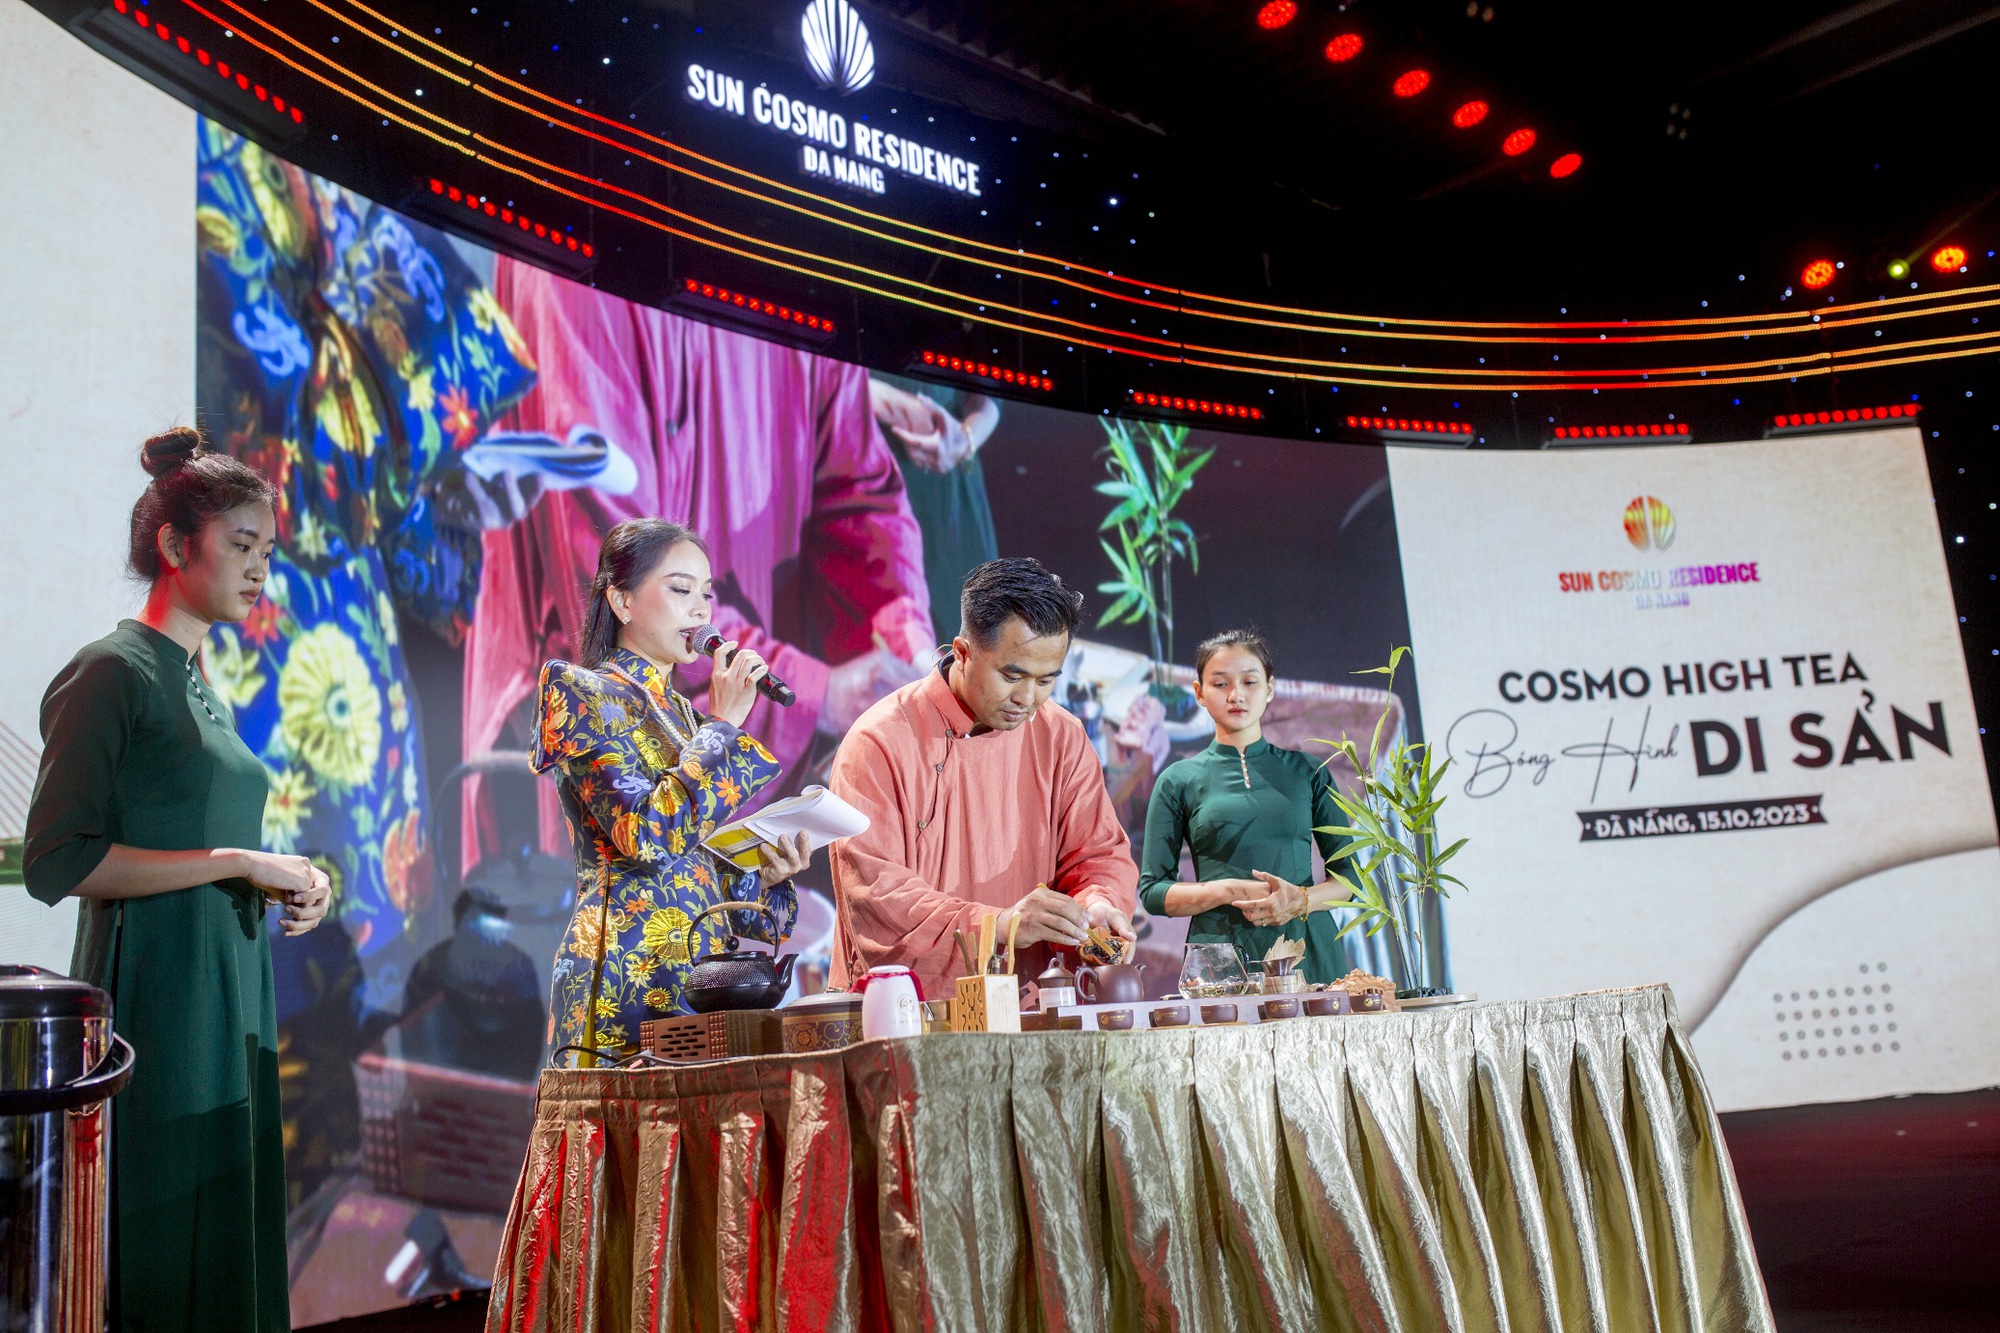 Cosmo High Tea: Trải nghiệm tinh hoa cùng Sun Cosmo Residence Da Nang - Ảnh 1.